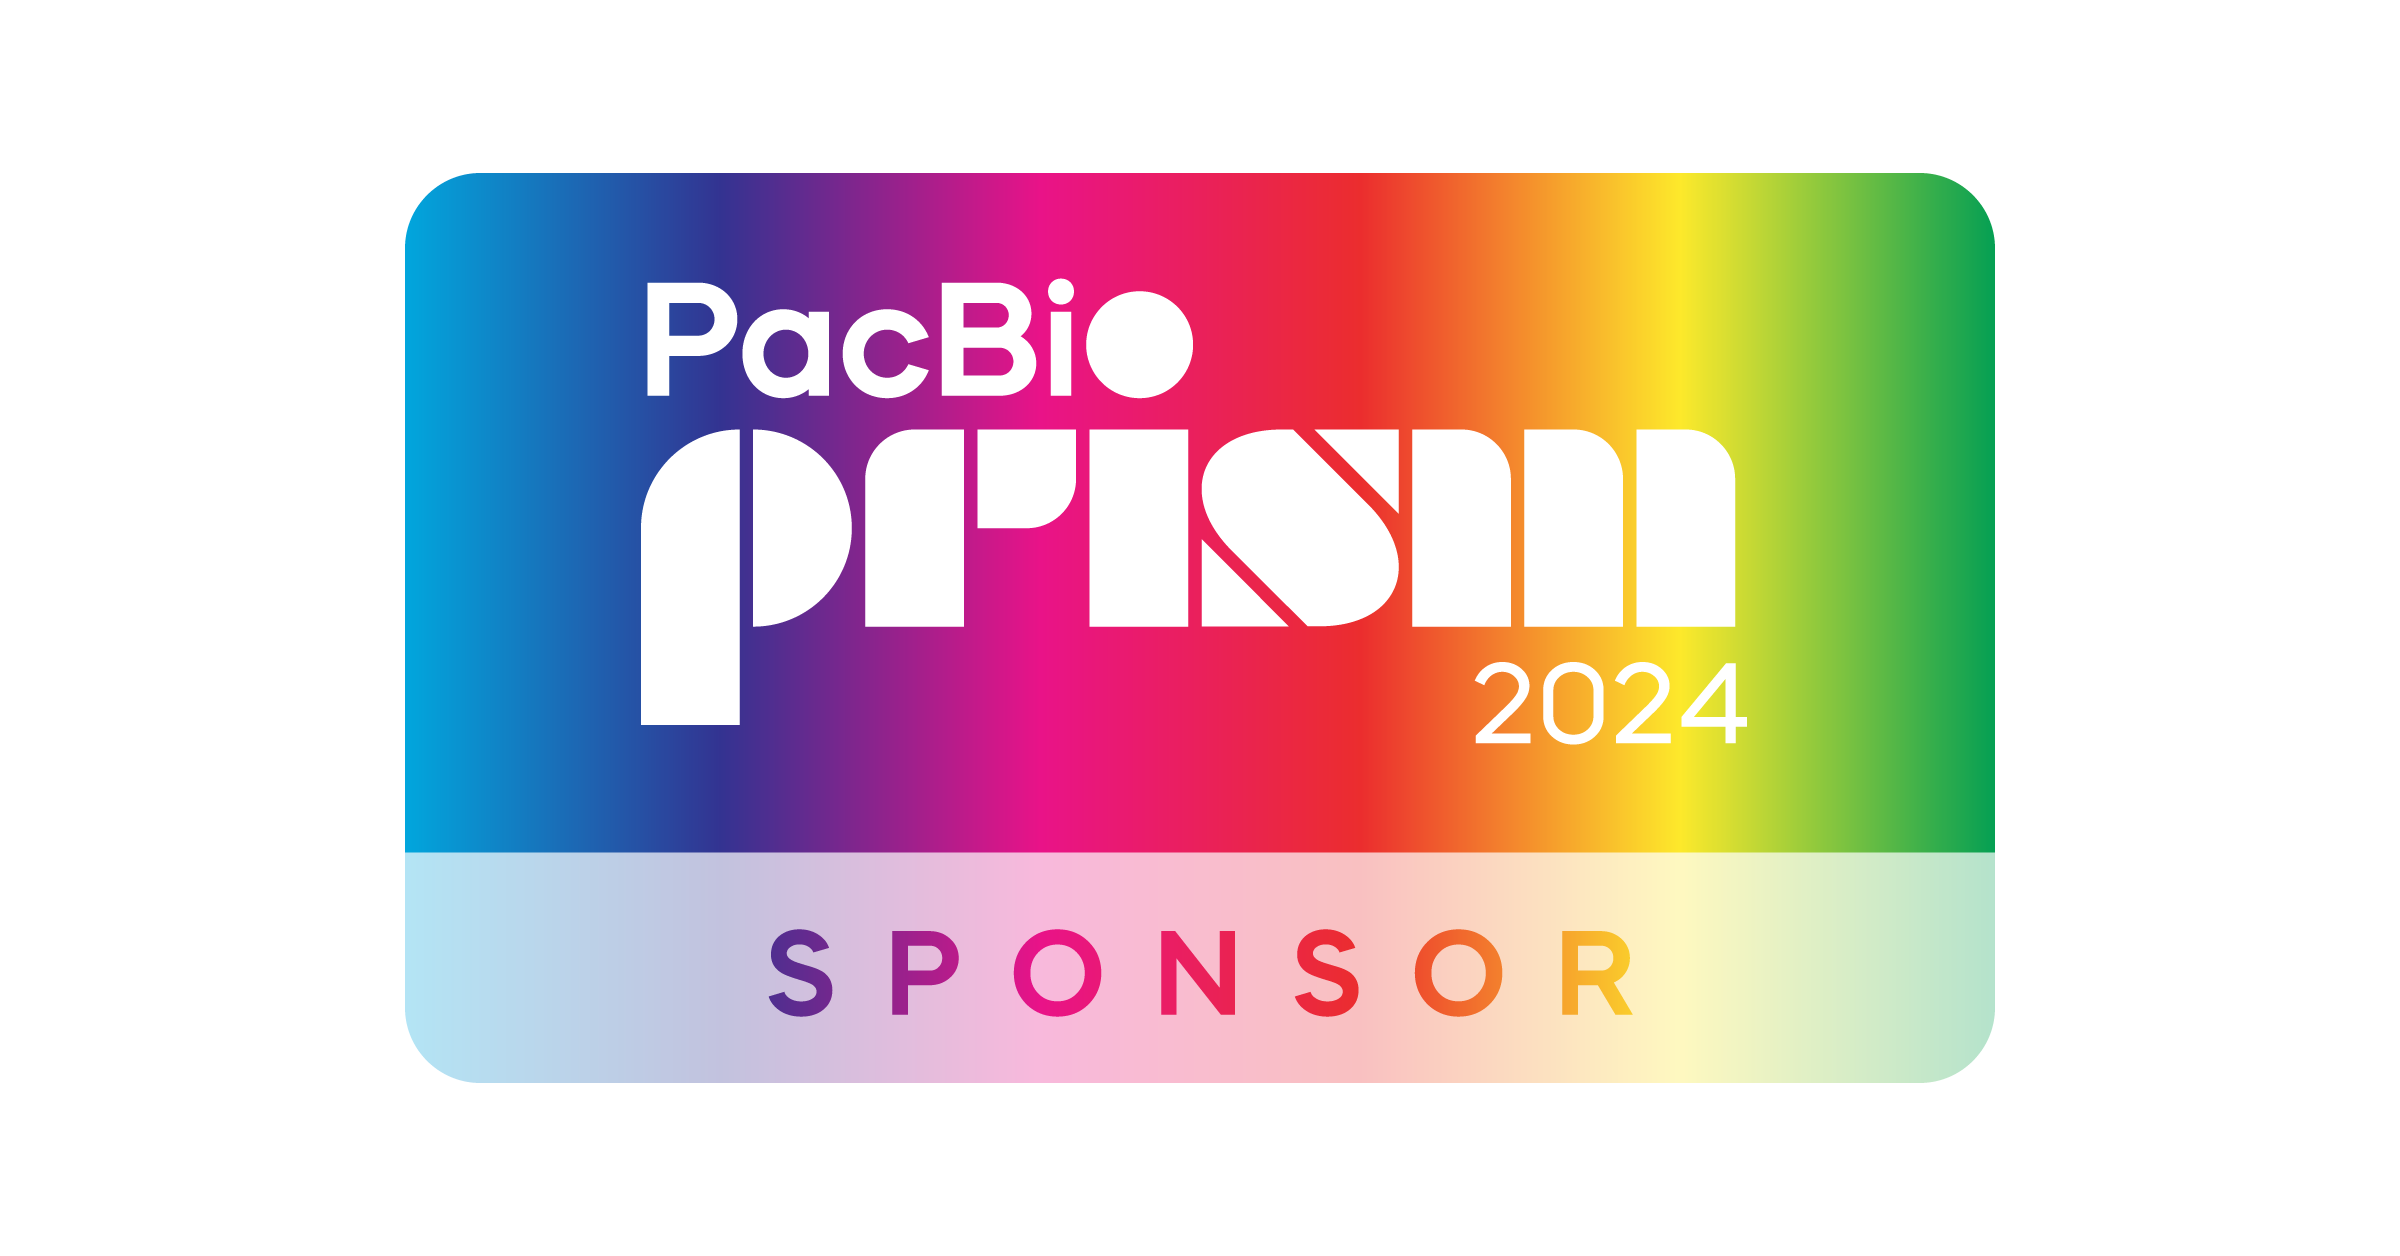 PacBio Prism 2024